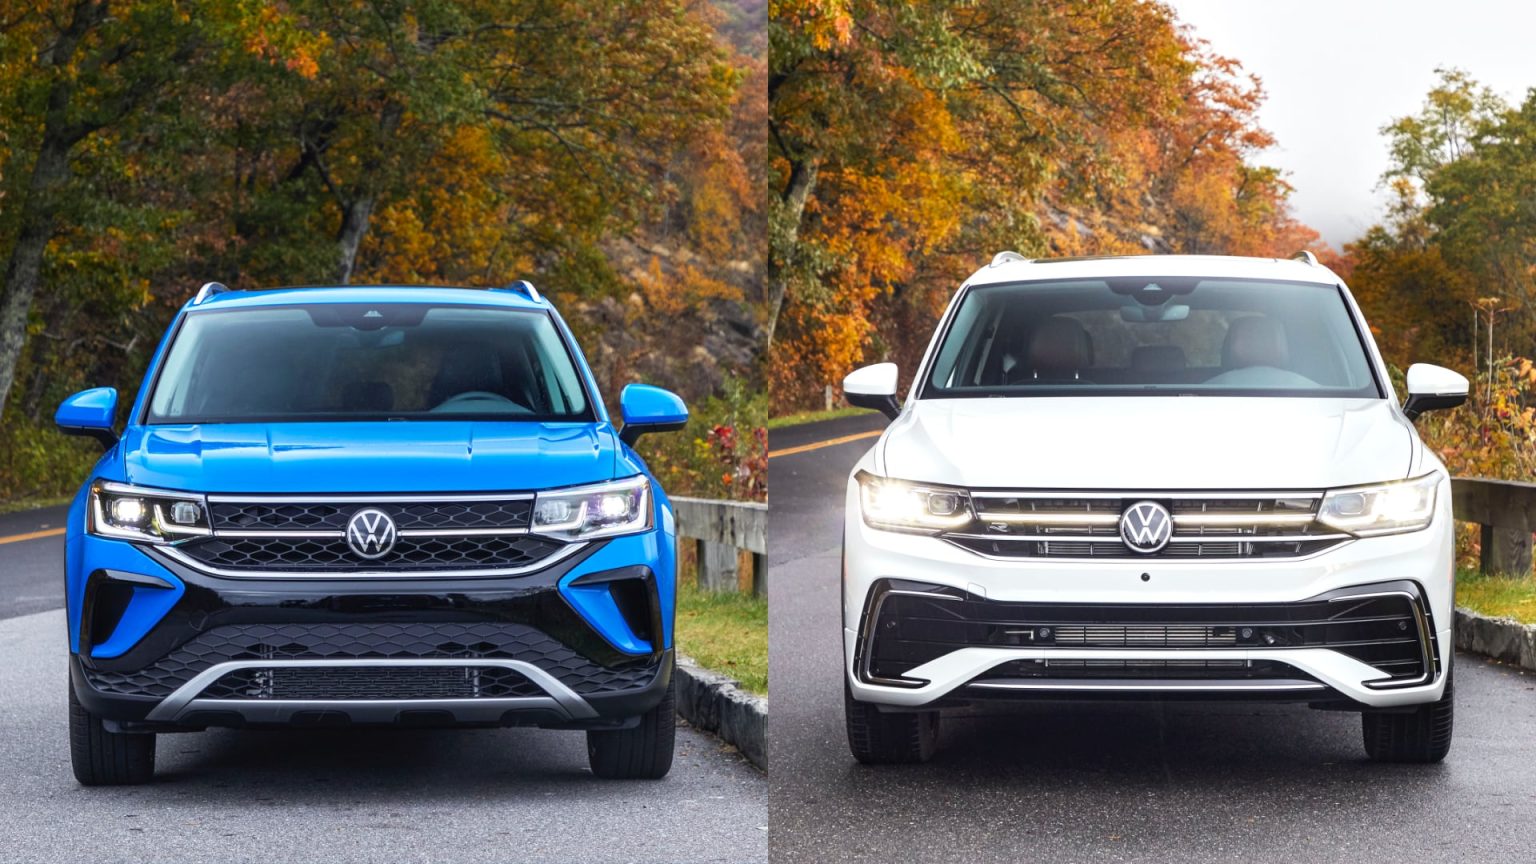 Volkswagen Taos vs Tiguan Which Is The Better Buy? Motorborne